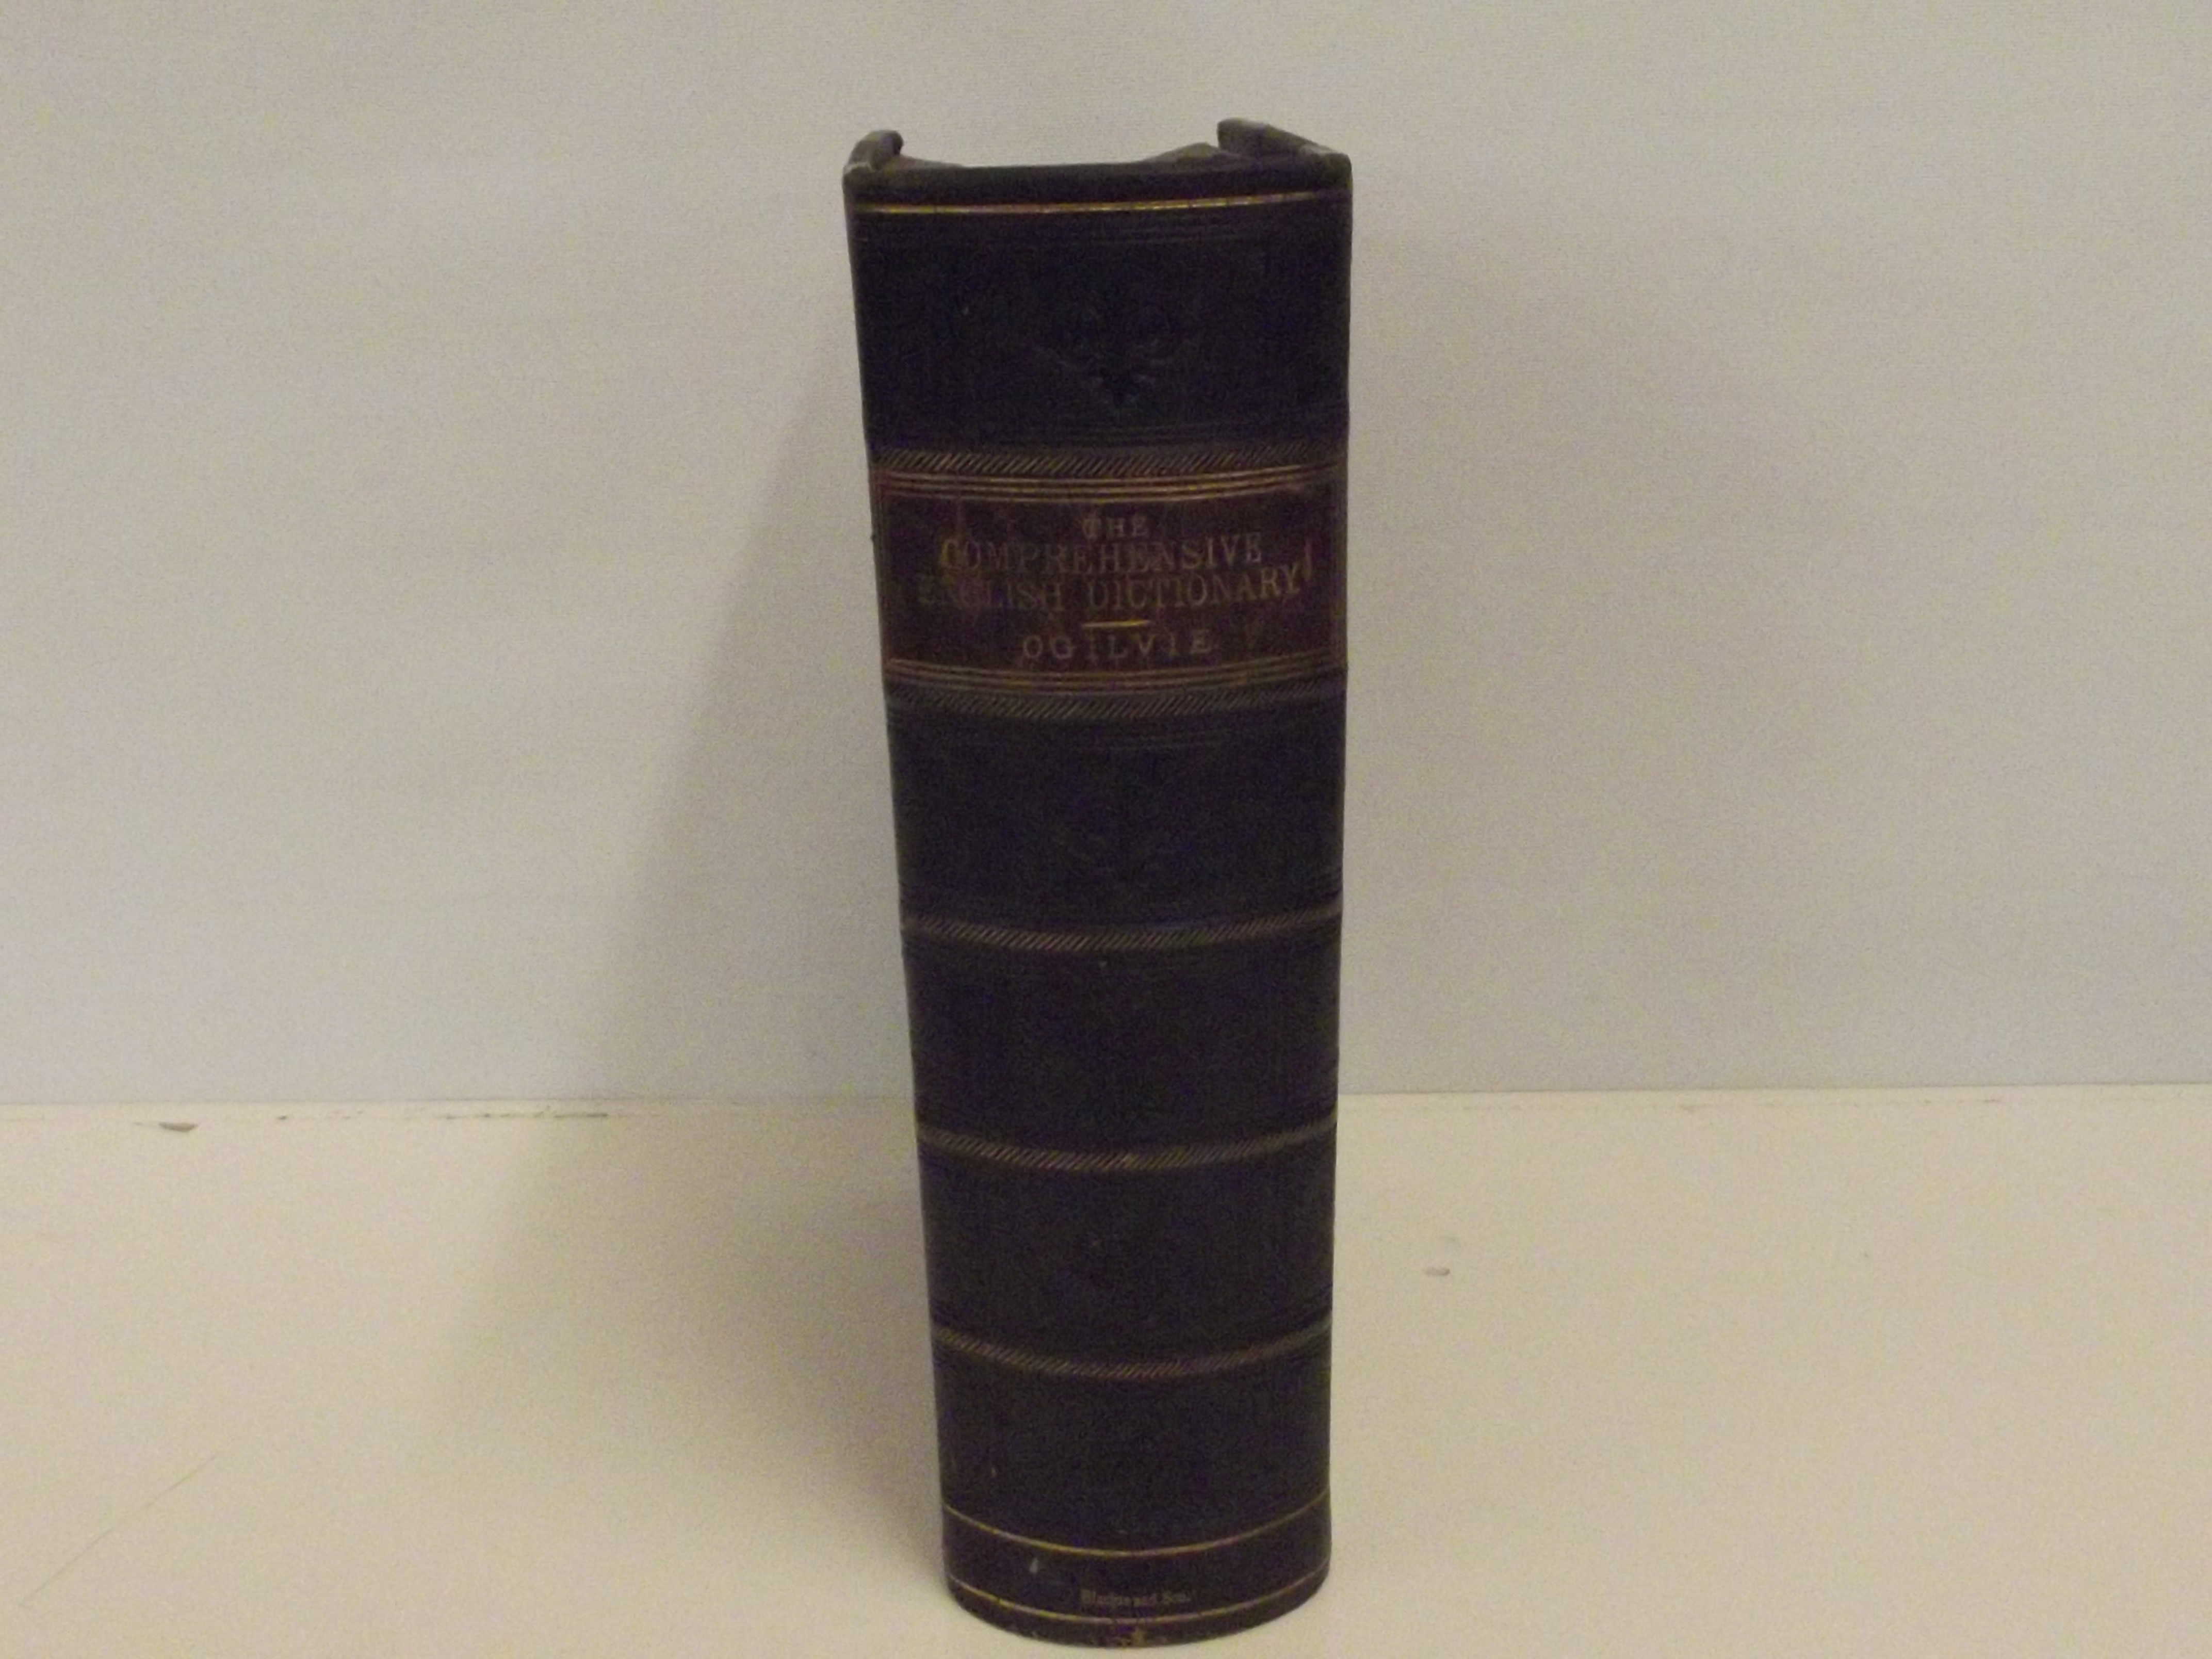 The comprehensive dictionary Ogilvie, Circa 1870